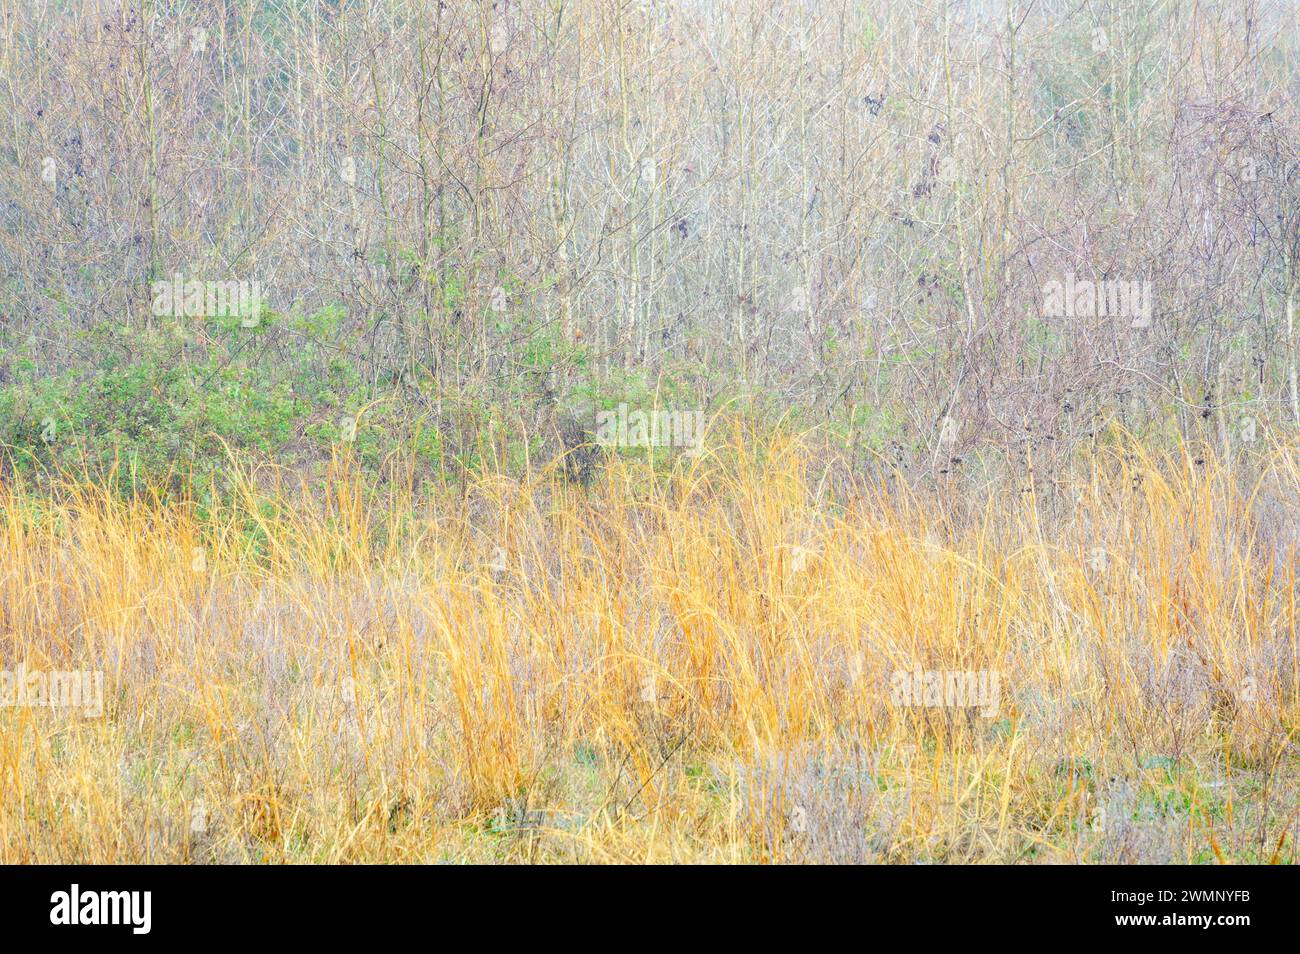 Abstraktes Bild farbenfrohe Präriegasen und Zweige, Paynes Prairie Preserve State Park, Florida, USA. Stockfoto